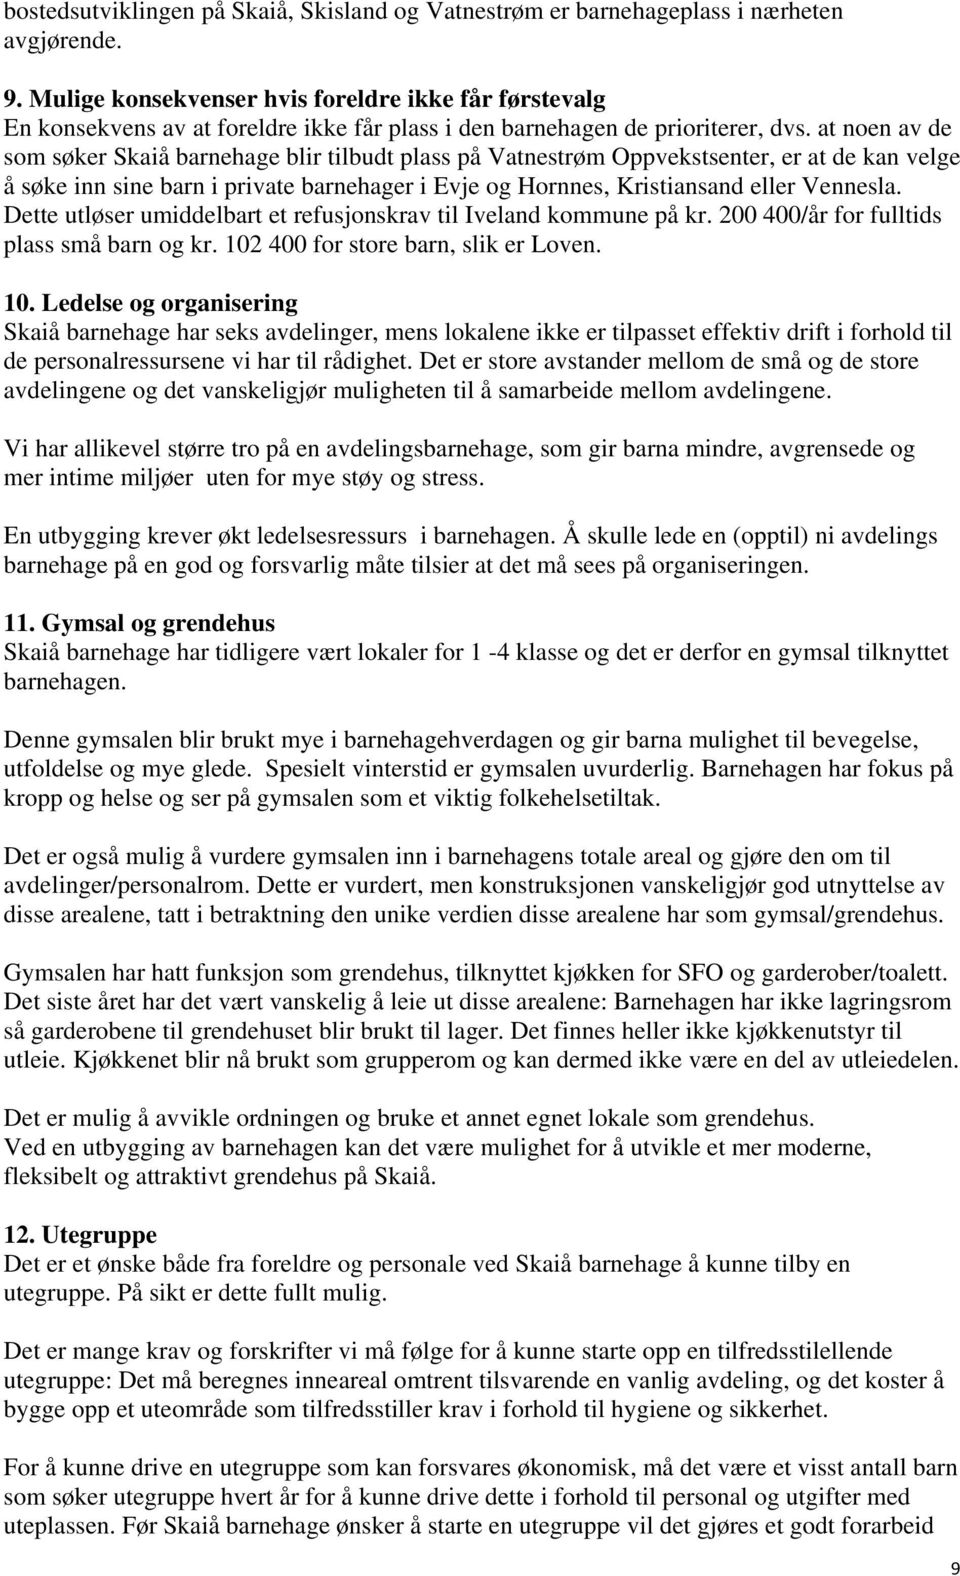 at noen av de som søker Skaiå barnehage blir tilbudt plass på Vatnestrøm Oppvekstsenter, er at de kan velge å søke inn sine barn i private barnehager i Evje og Hornnes, Kristiansand eller Vennesla.